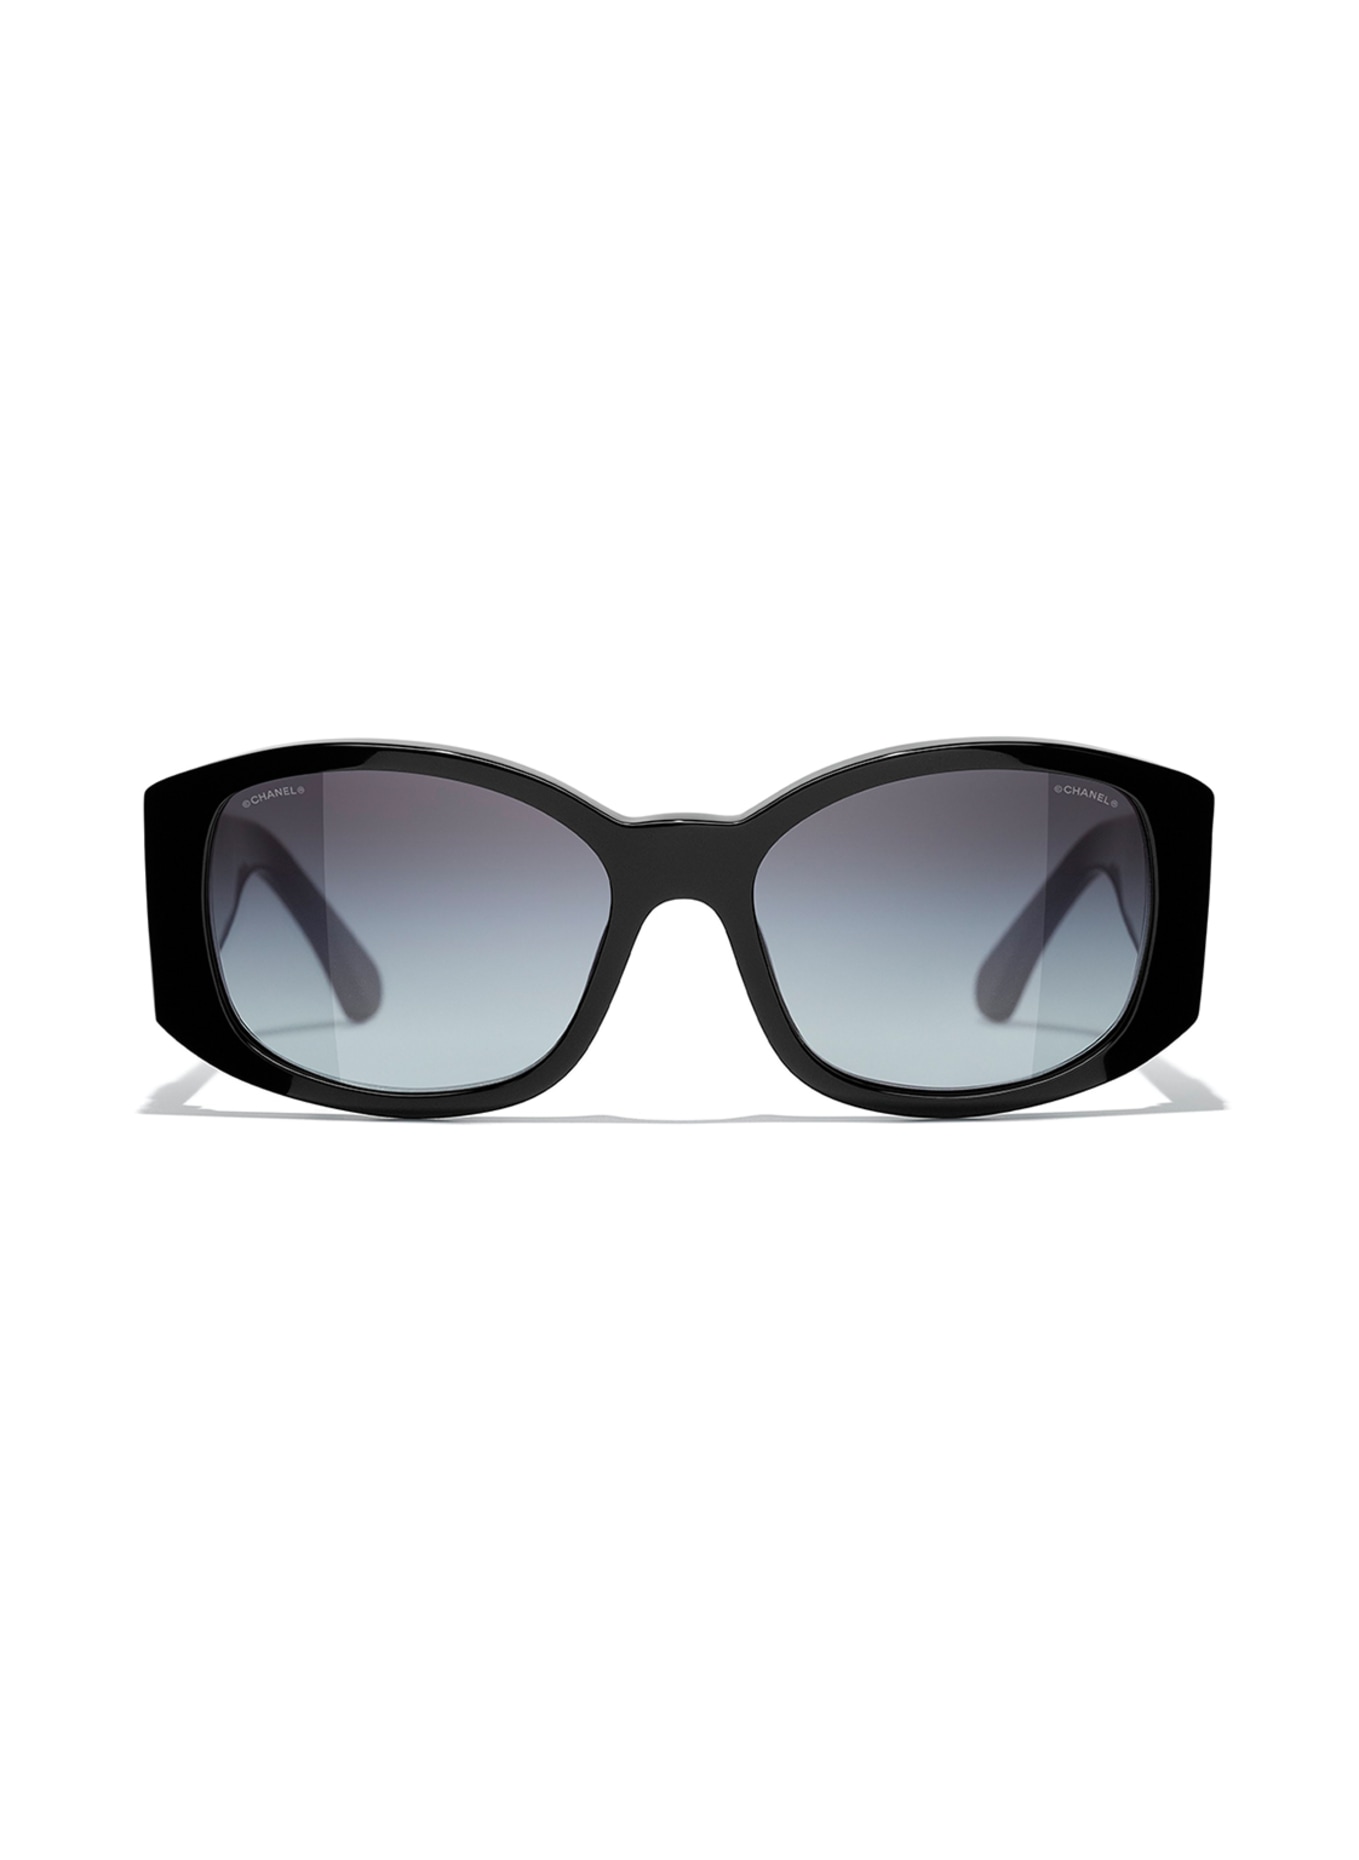 CHANEL Ovale Sonnenbrille, Farbe: C501S654 - SCHWARZ/ GRAU VERLAUF (Bild 2)